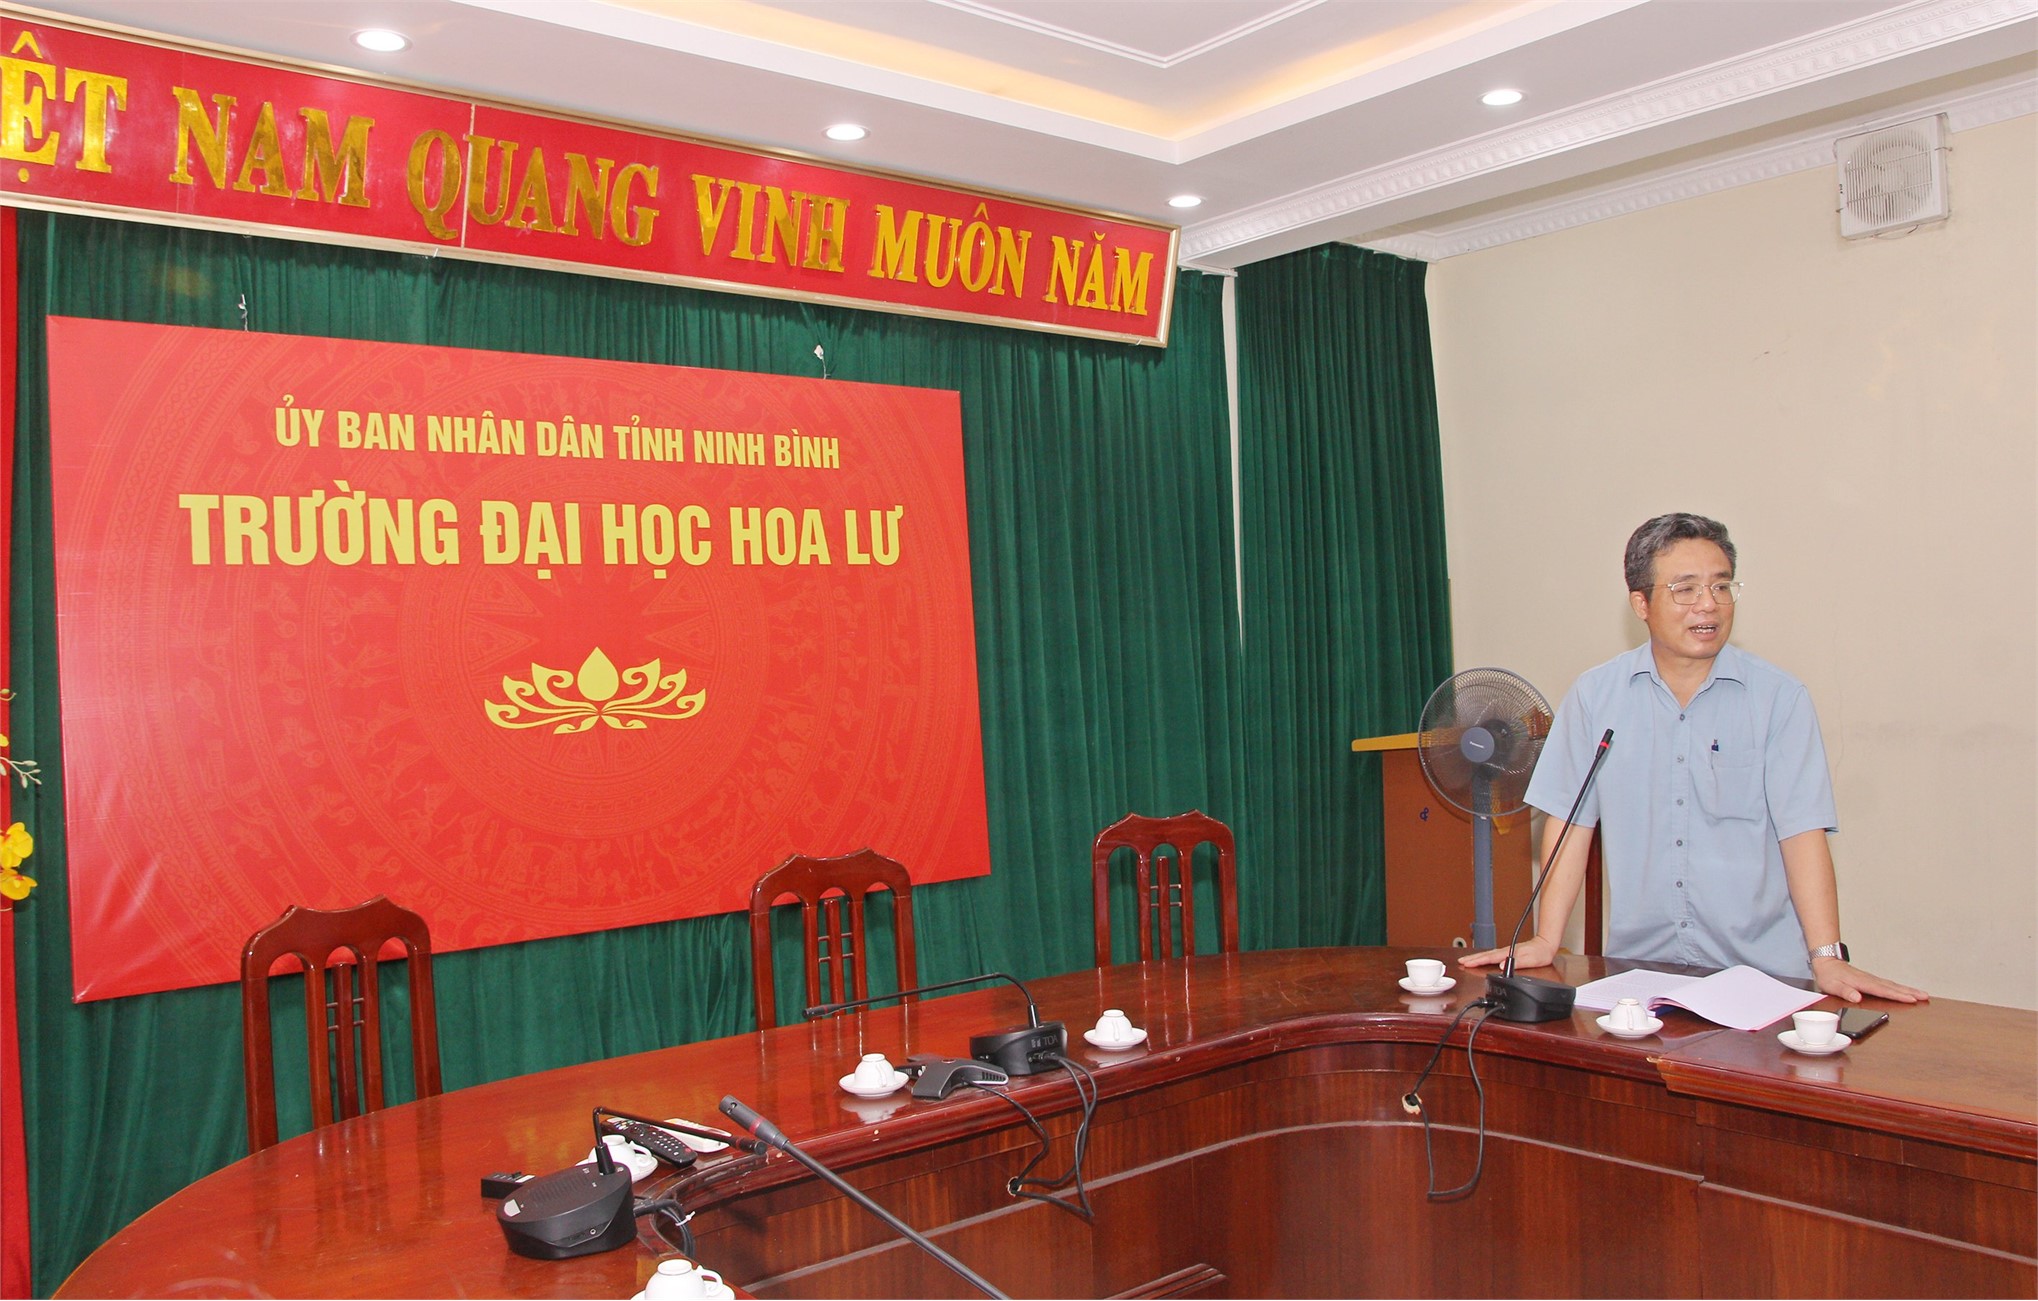 Hội thảo khoa học “Giải pháp phát huy giá trị văn hóa du lịch Ninh Bình trong bối cảnh hội nhập quốc tế”